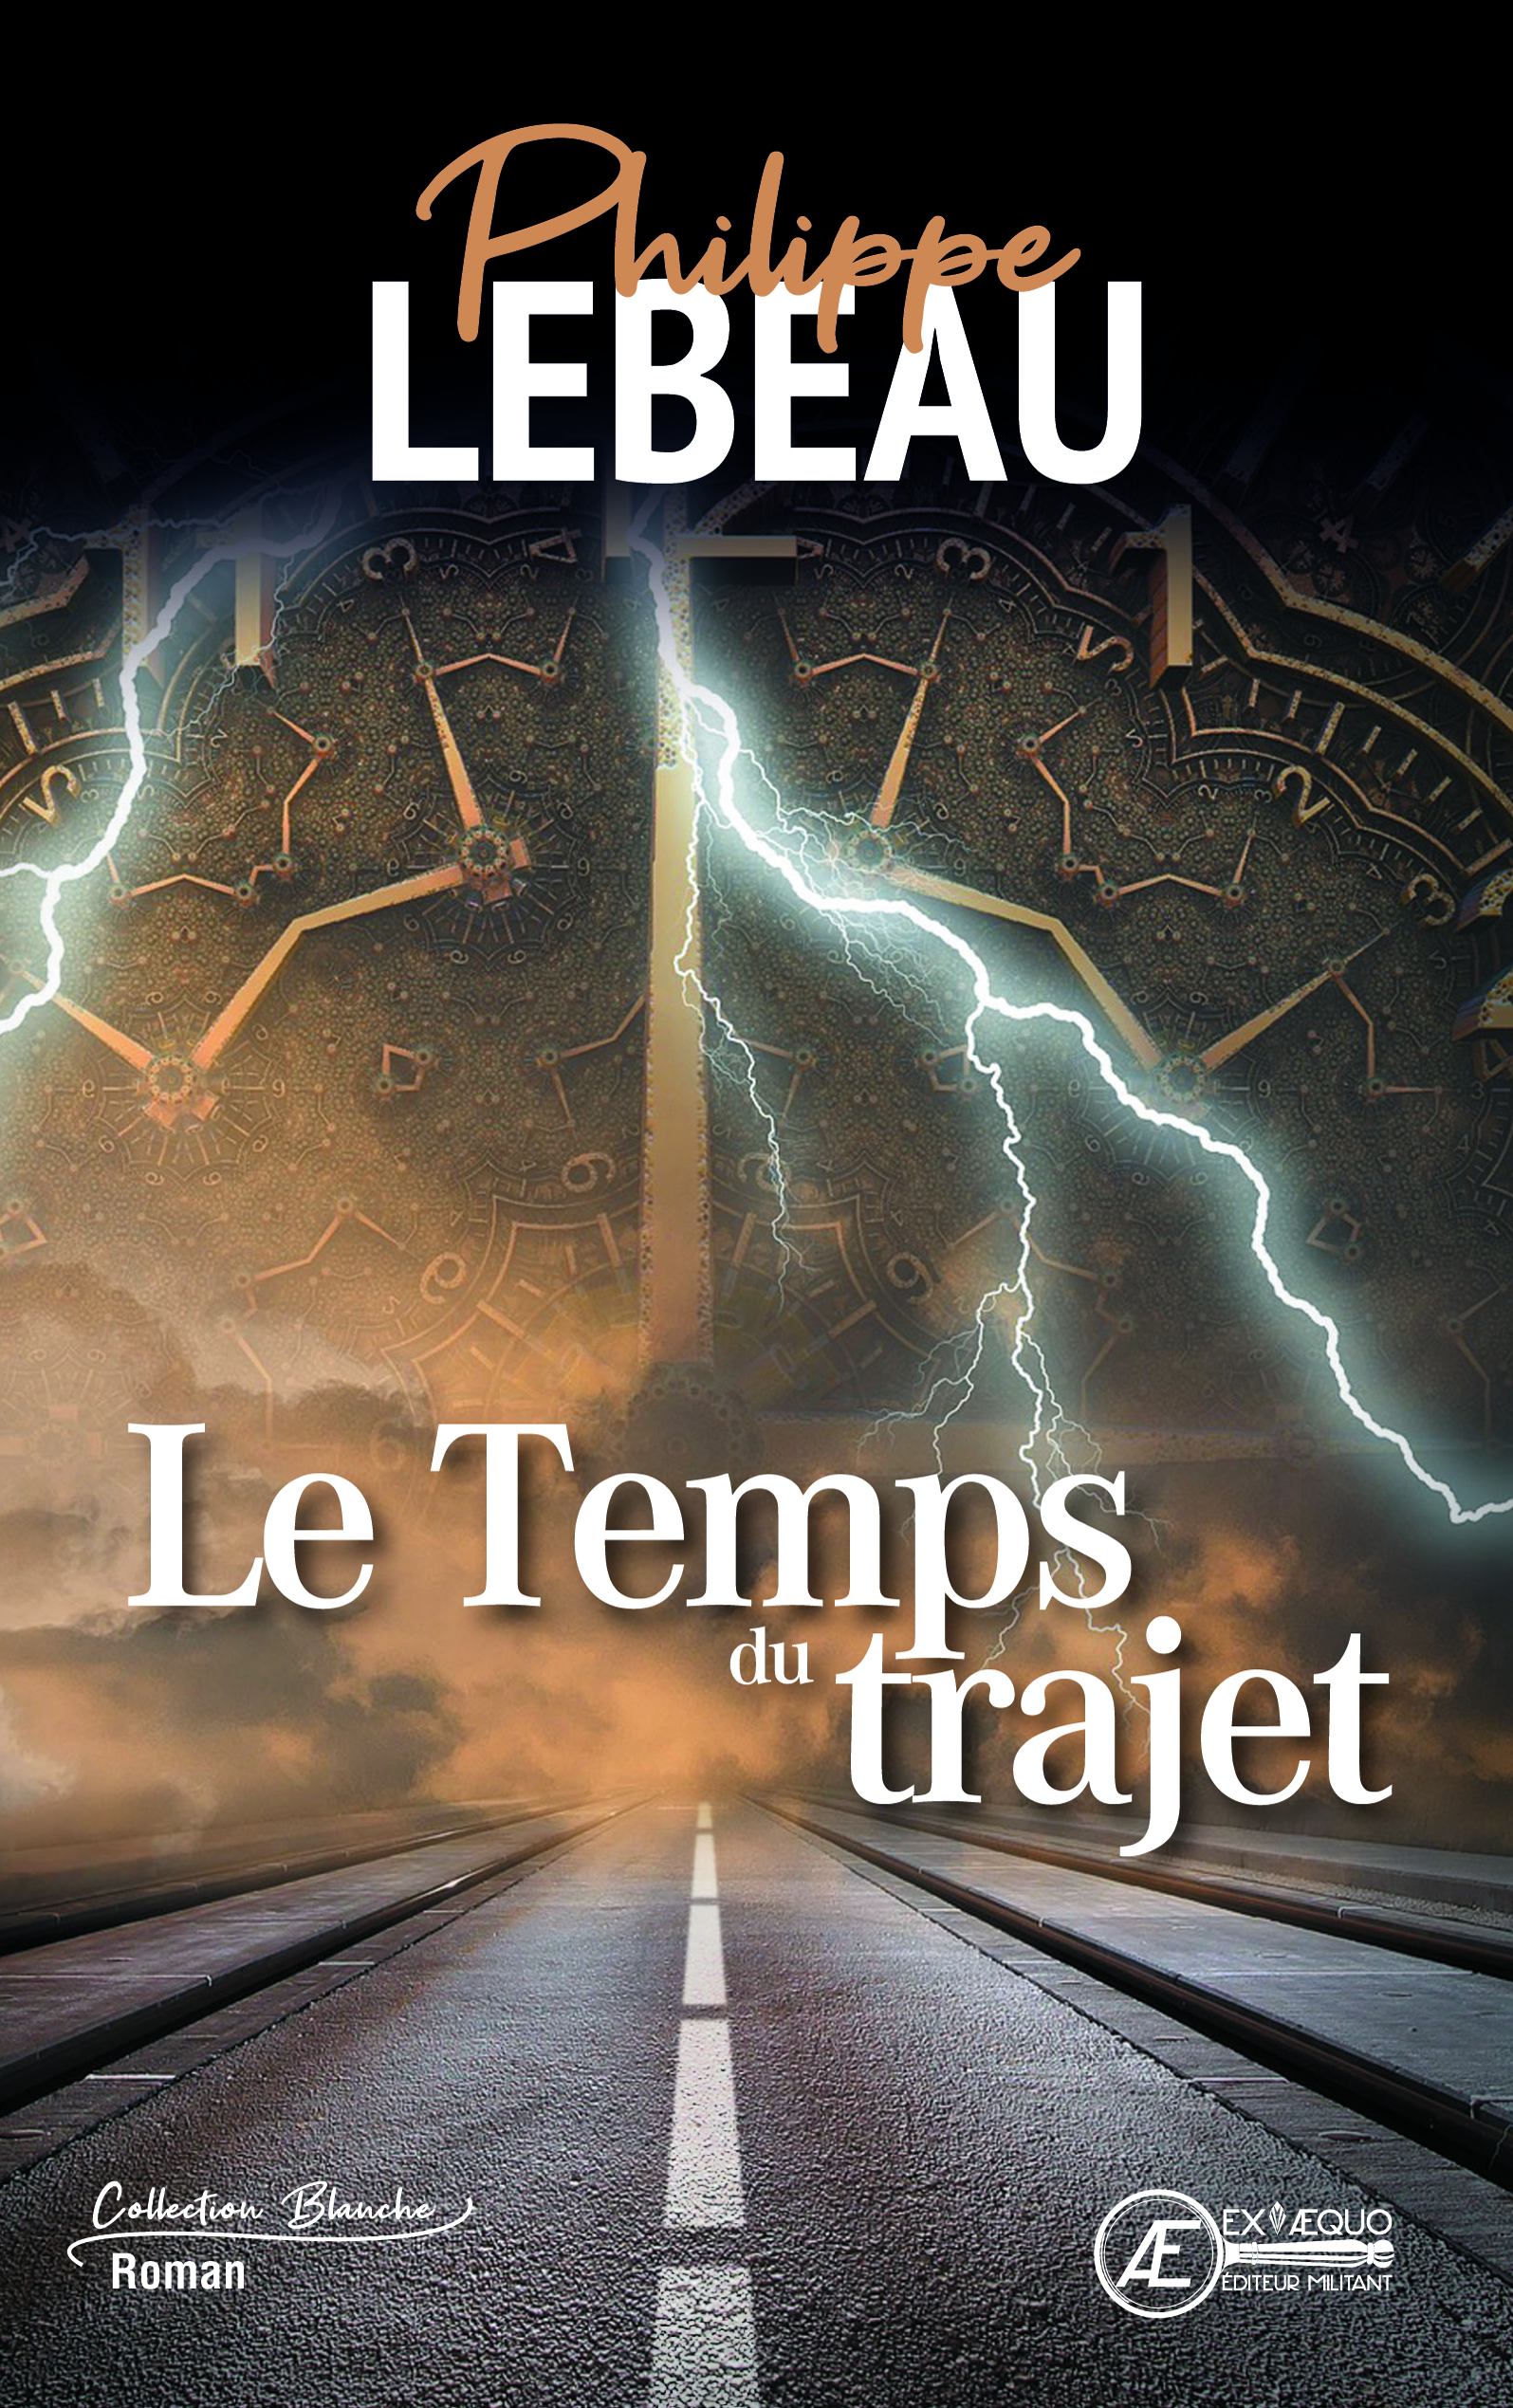 You are currently viewing Le temps du trajet, de Philippe Lebeau